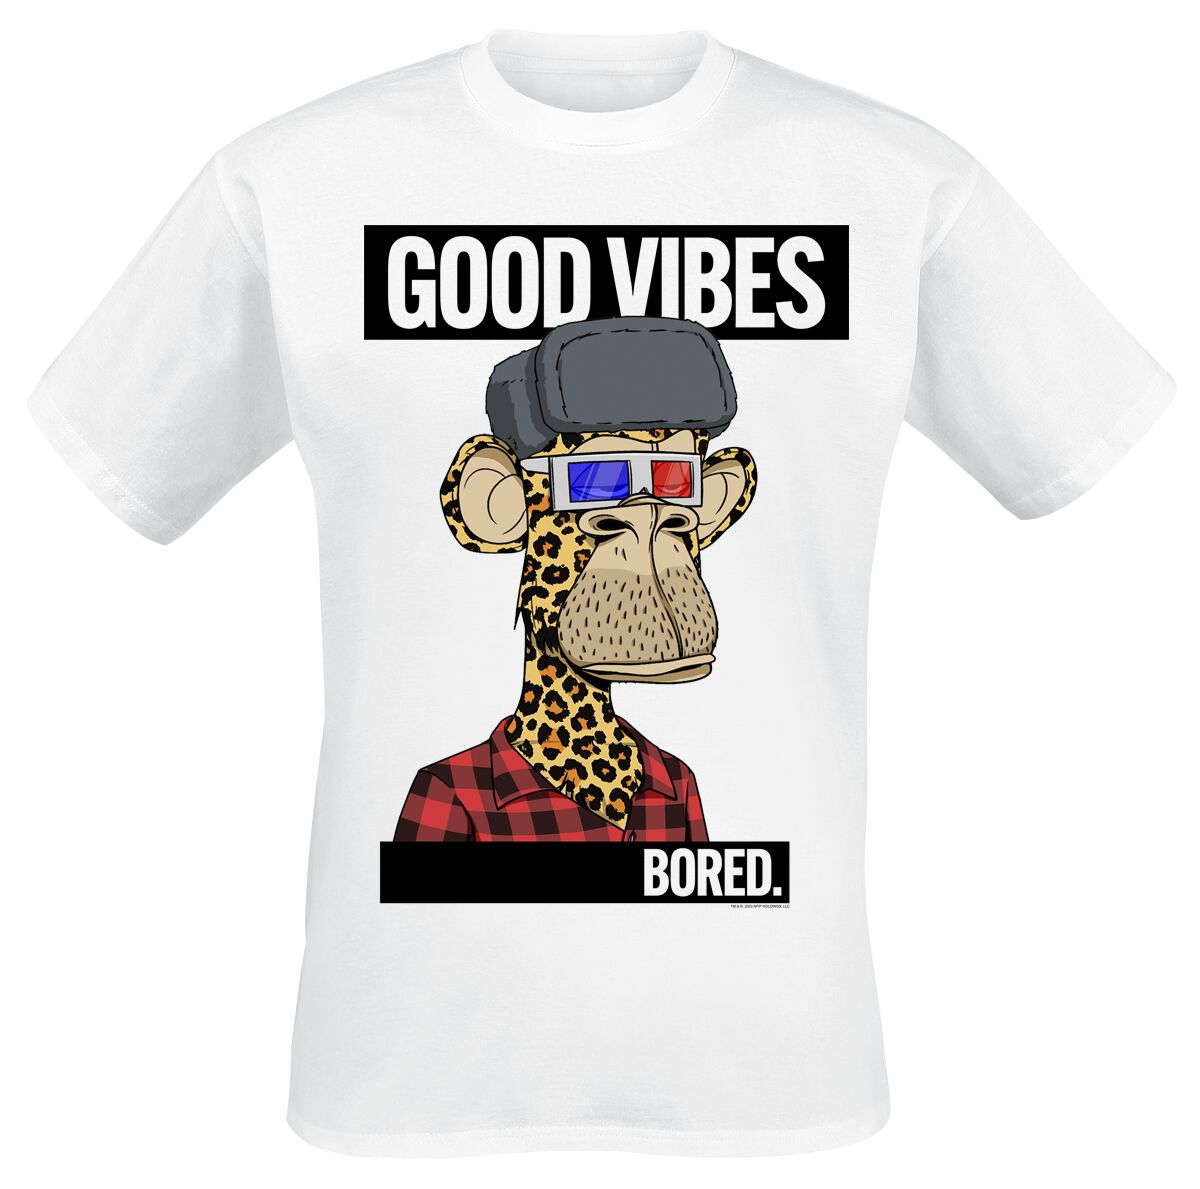 Bored Of Directors T-Shirt - Good Vibes - S bis XXL - für Männer - Größe S - weiß  - EMP exklusives Merchandise!